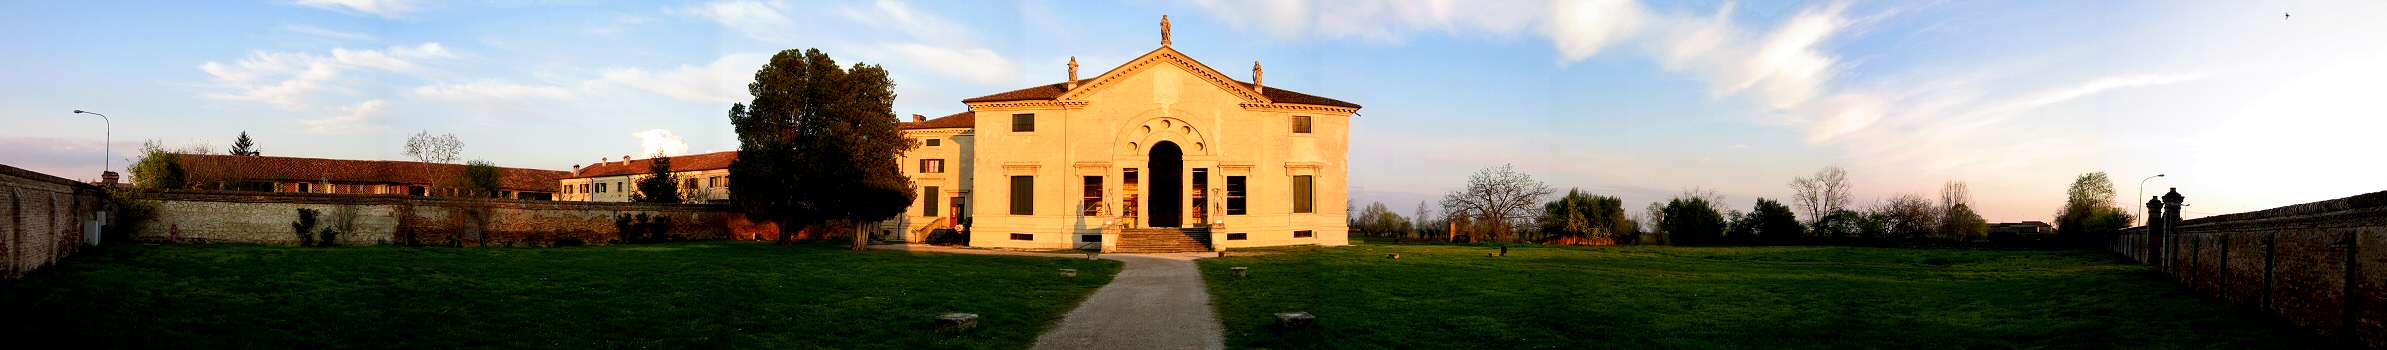 Villa Palladiana a Pojana Maggiore, Vicenza